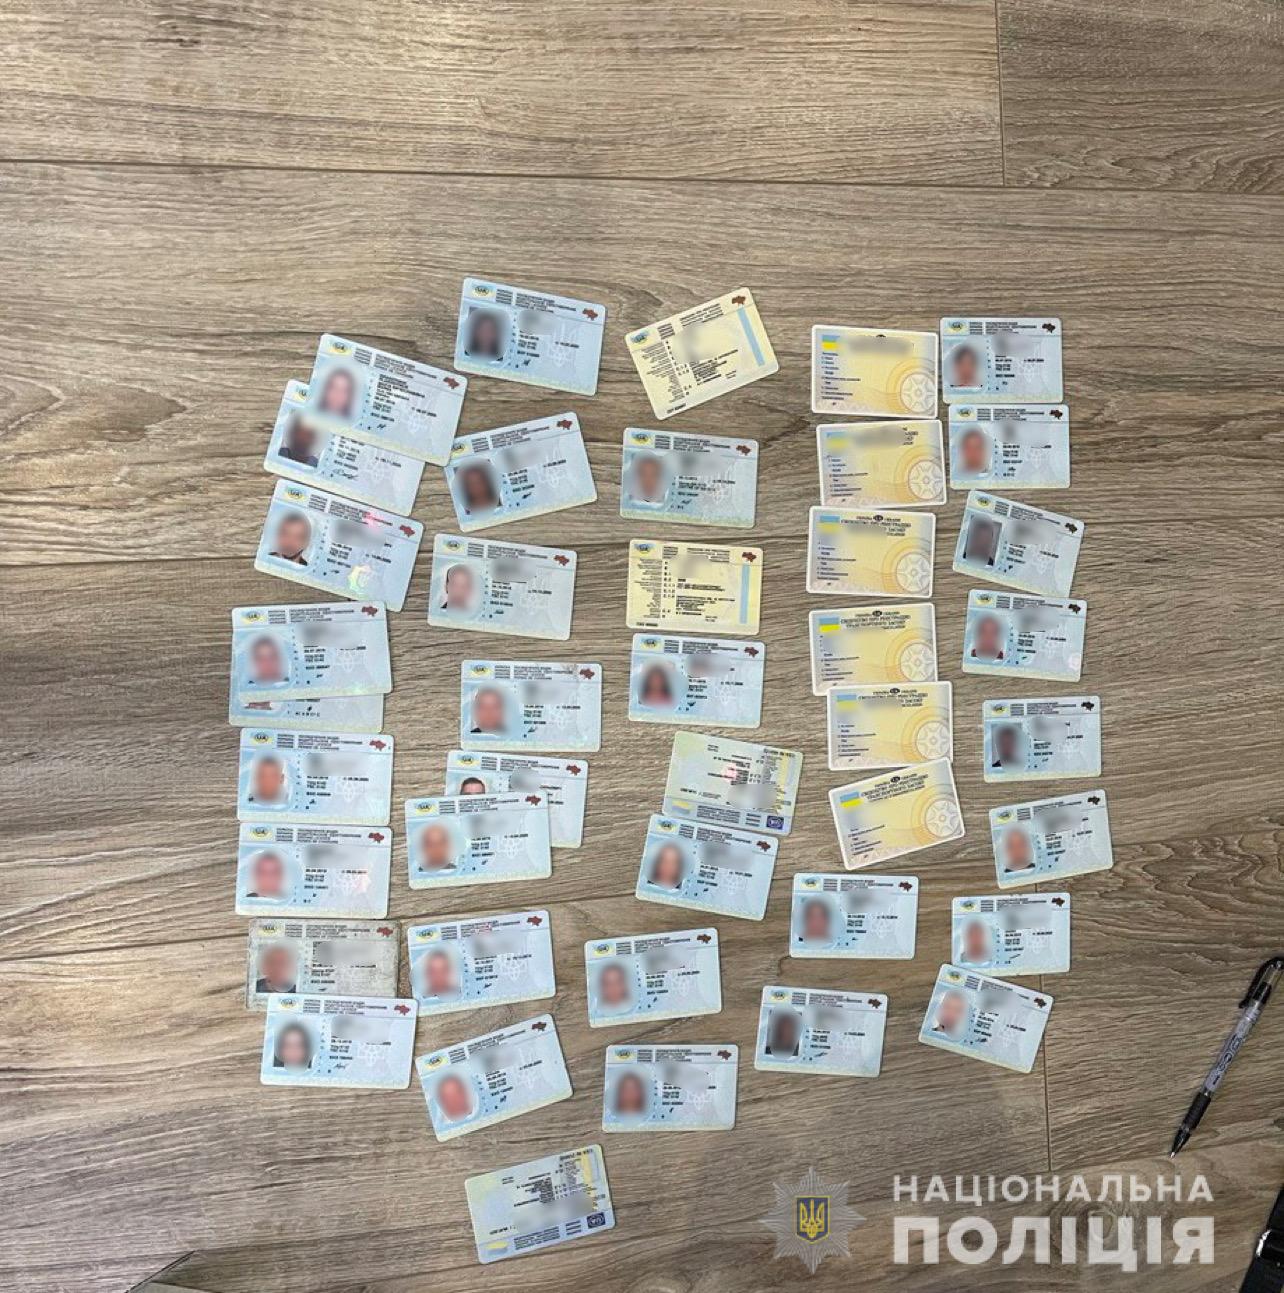 Одесские жулики зарабатывали на подделке водительских удостоверений до 5 млн гривен в месяц